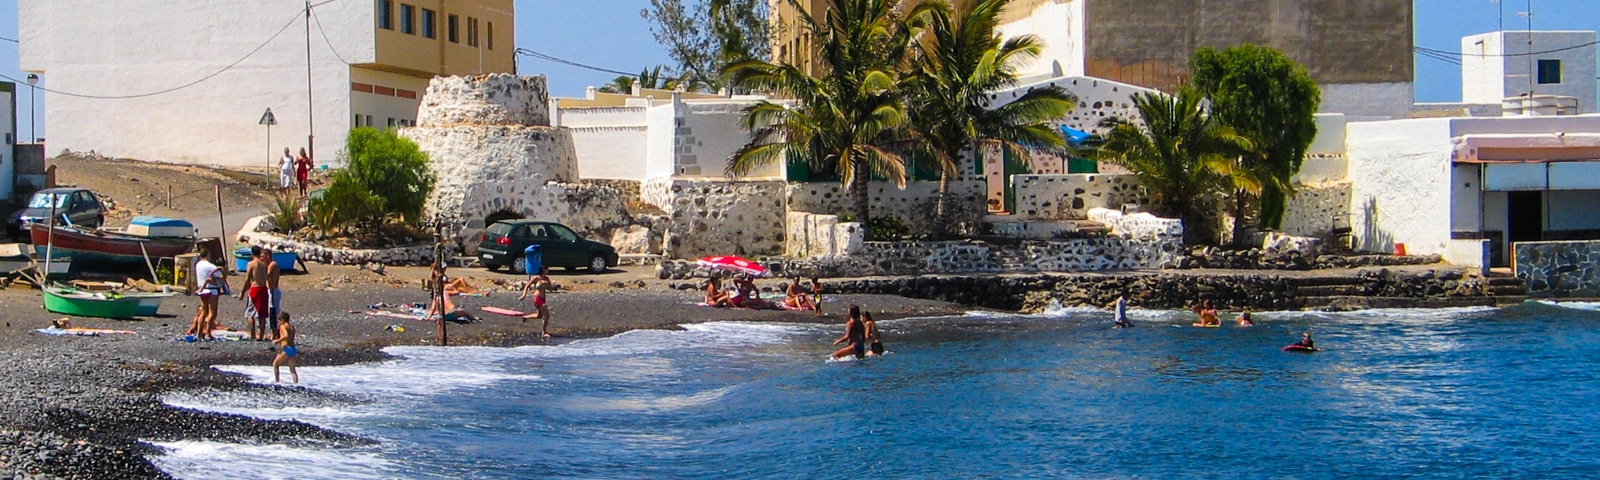 Beschreibung Puerto Lajas